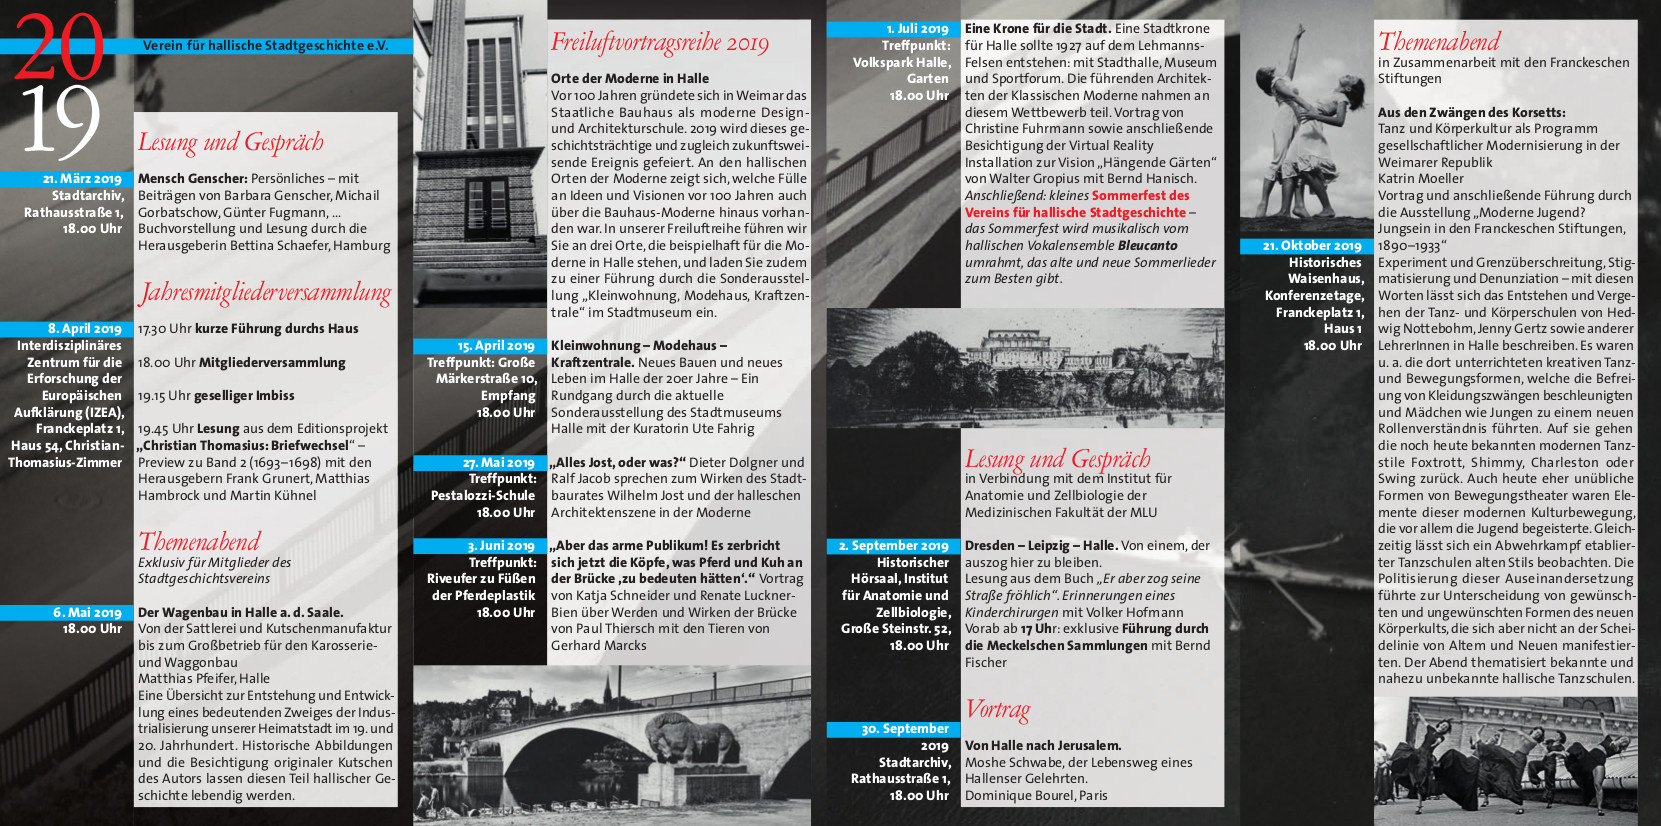 2019 Jahresprogramm Stadtgeschichte Halle - Seite 2